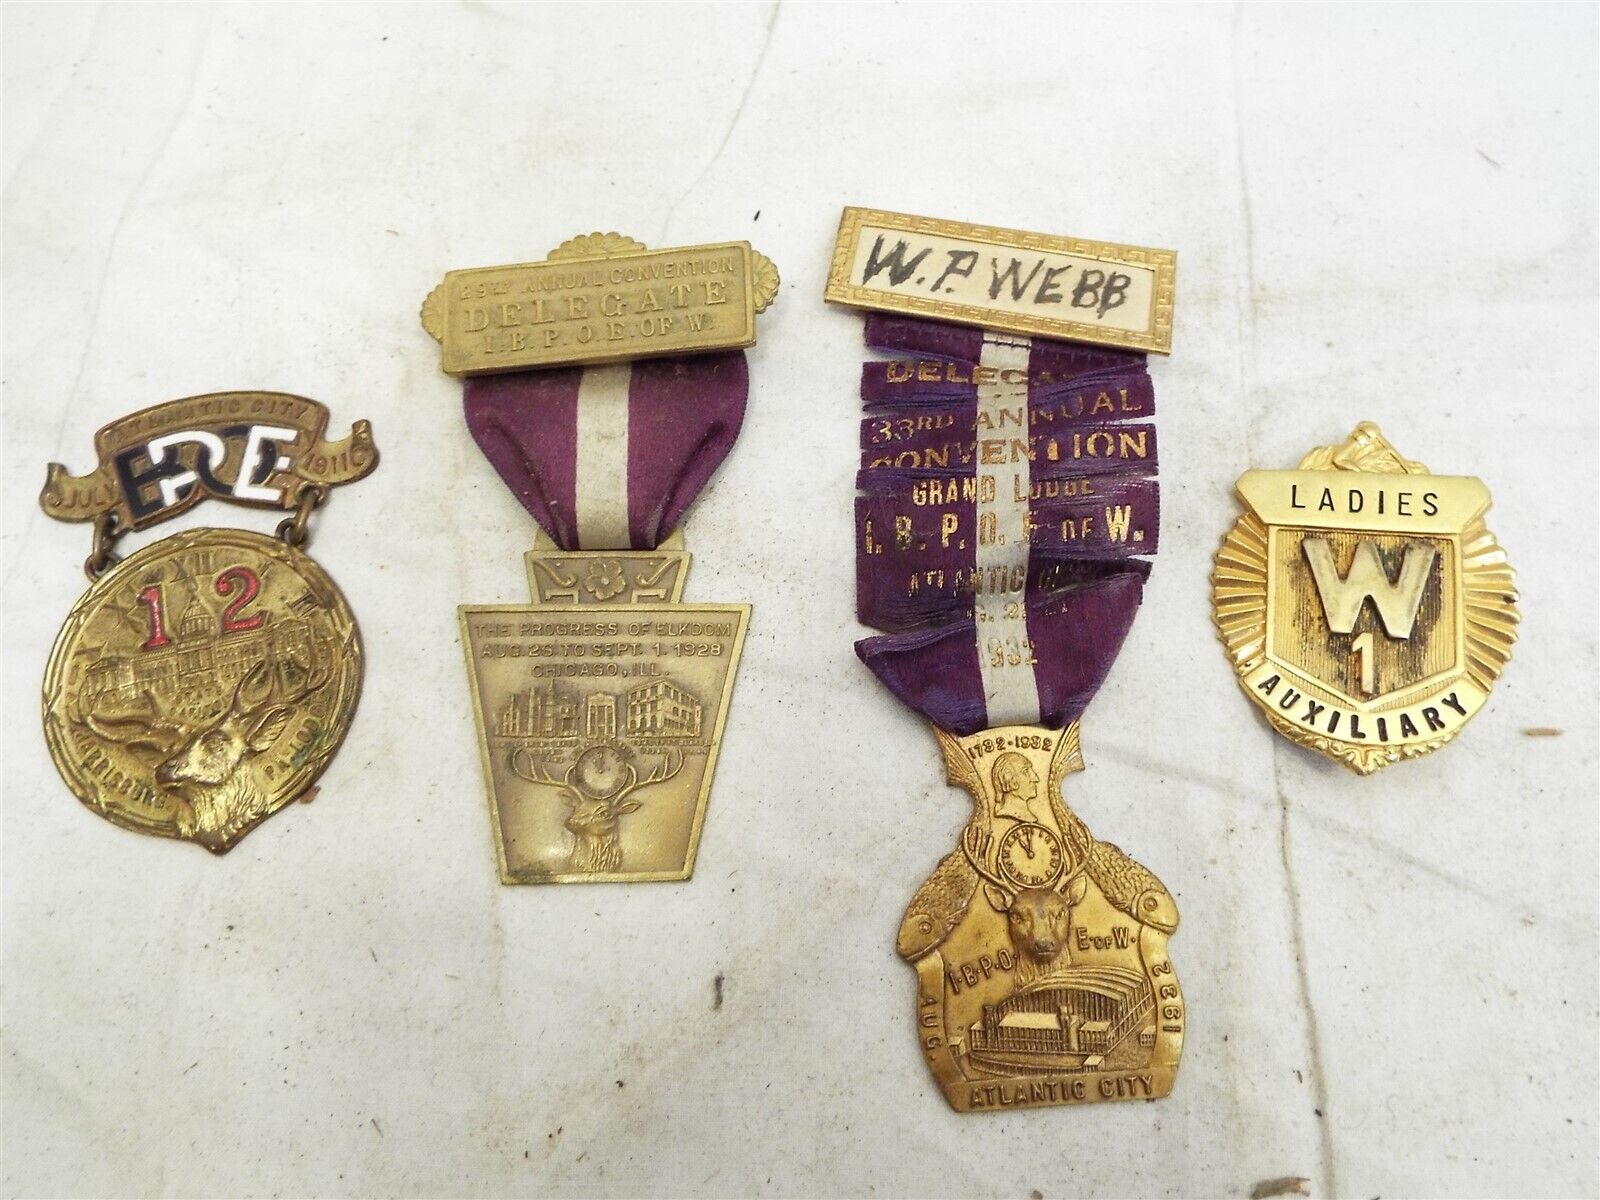 BPOE Does Elks Lodge Convention Delegate Medal Badge Lot 1911 1928 1932 Ribbon